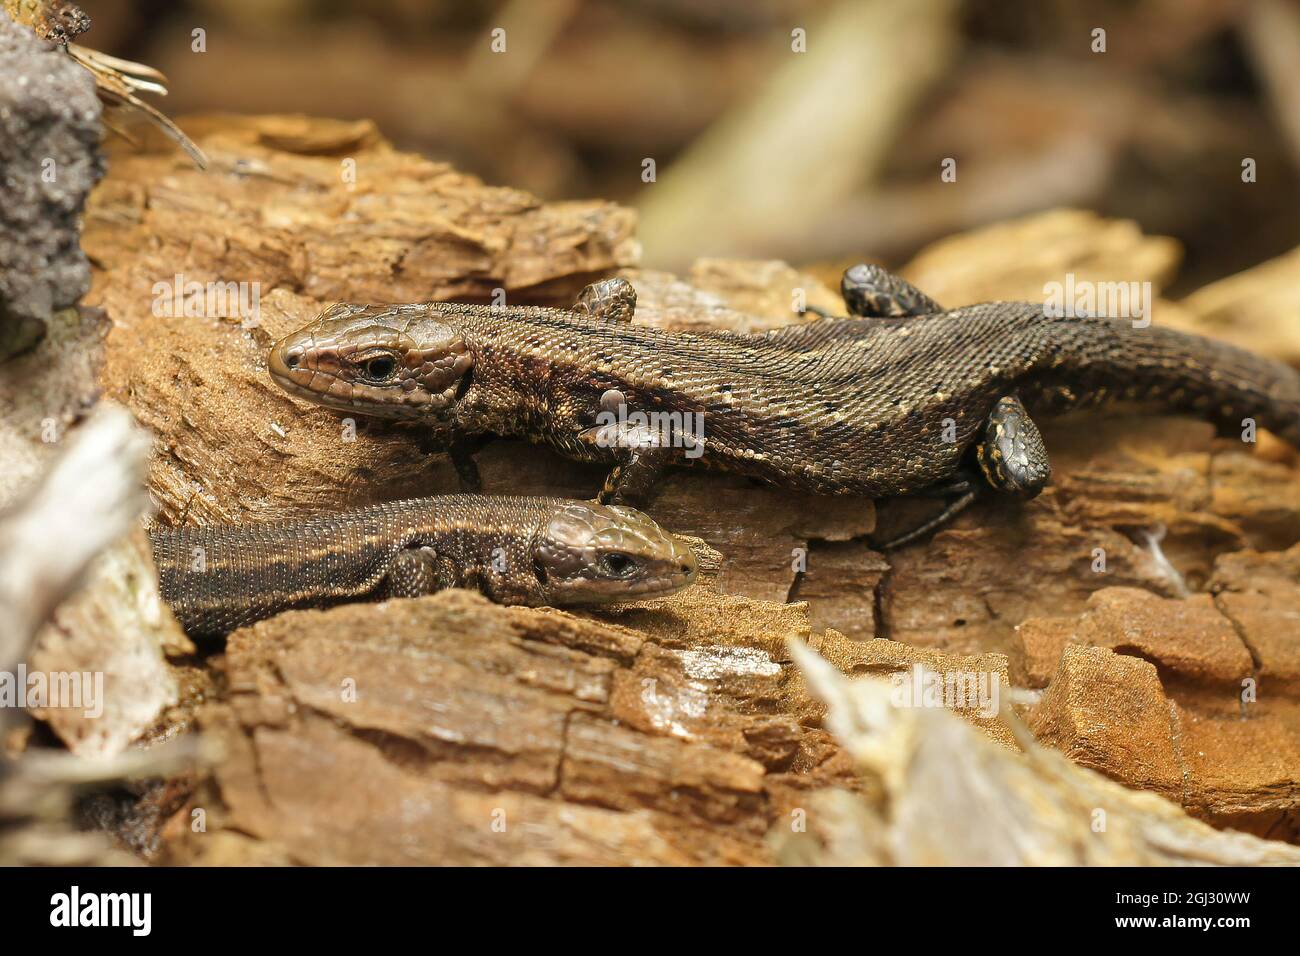 Primer plano de dos lagartos comunes con rodamientos vivos, Zootoca vivipara tomar el sol Foto de stock